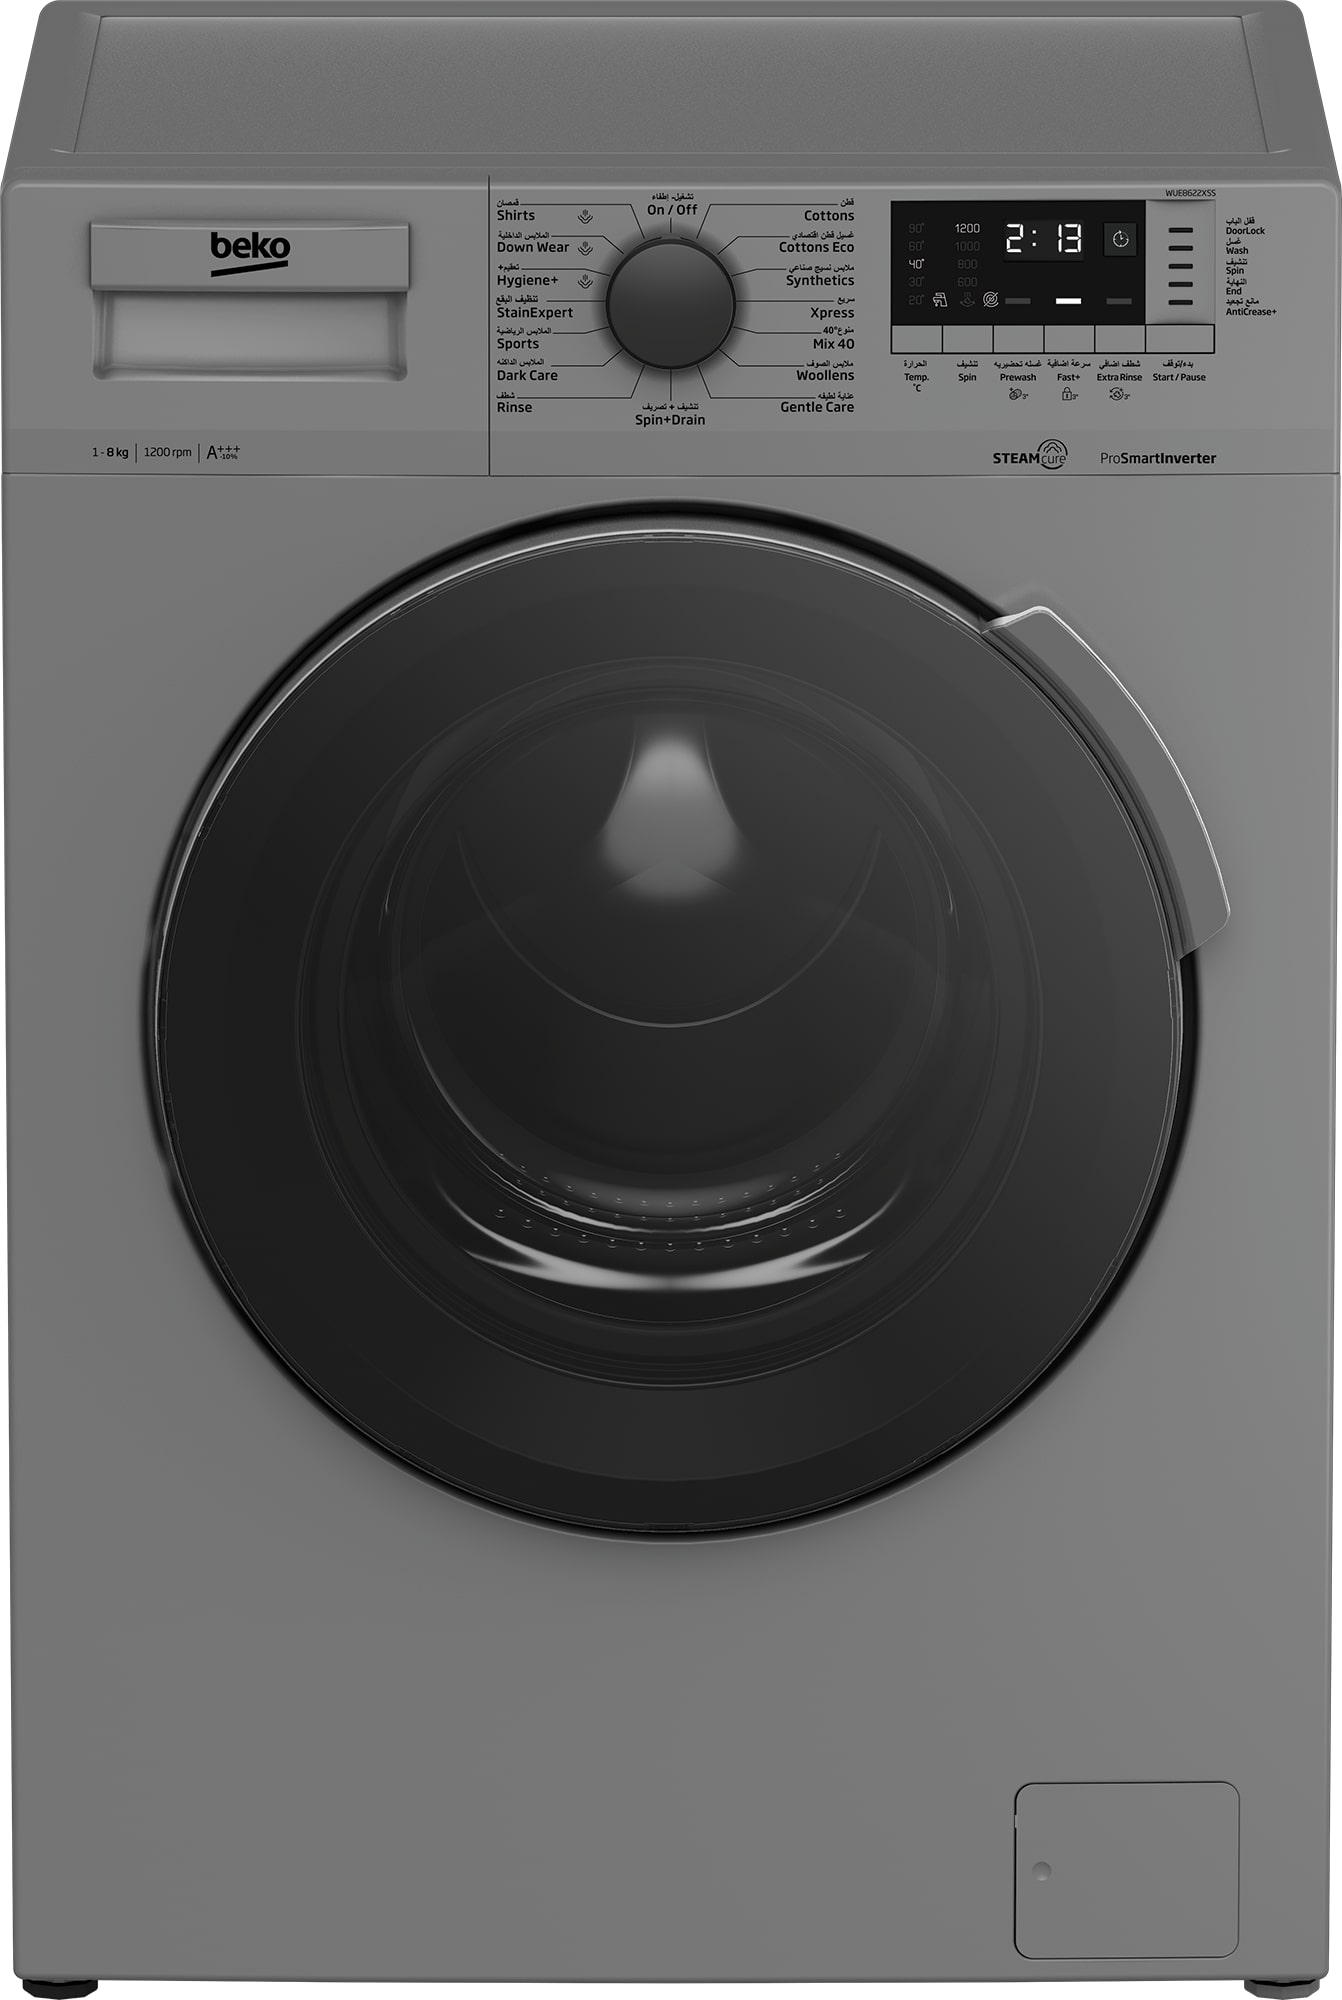 Beko Washing Machine 8 kg 1200 rpm -Dark Silver